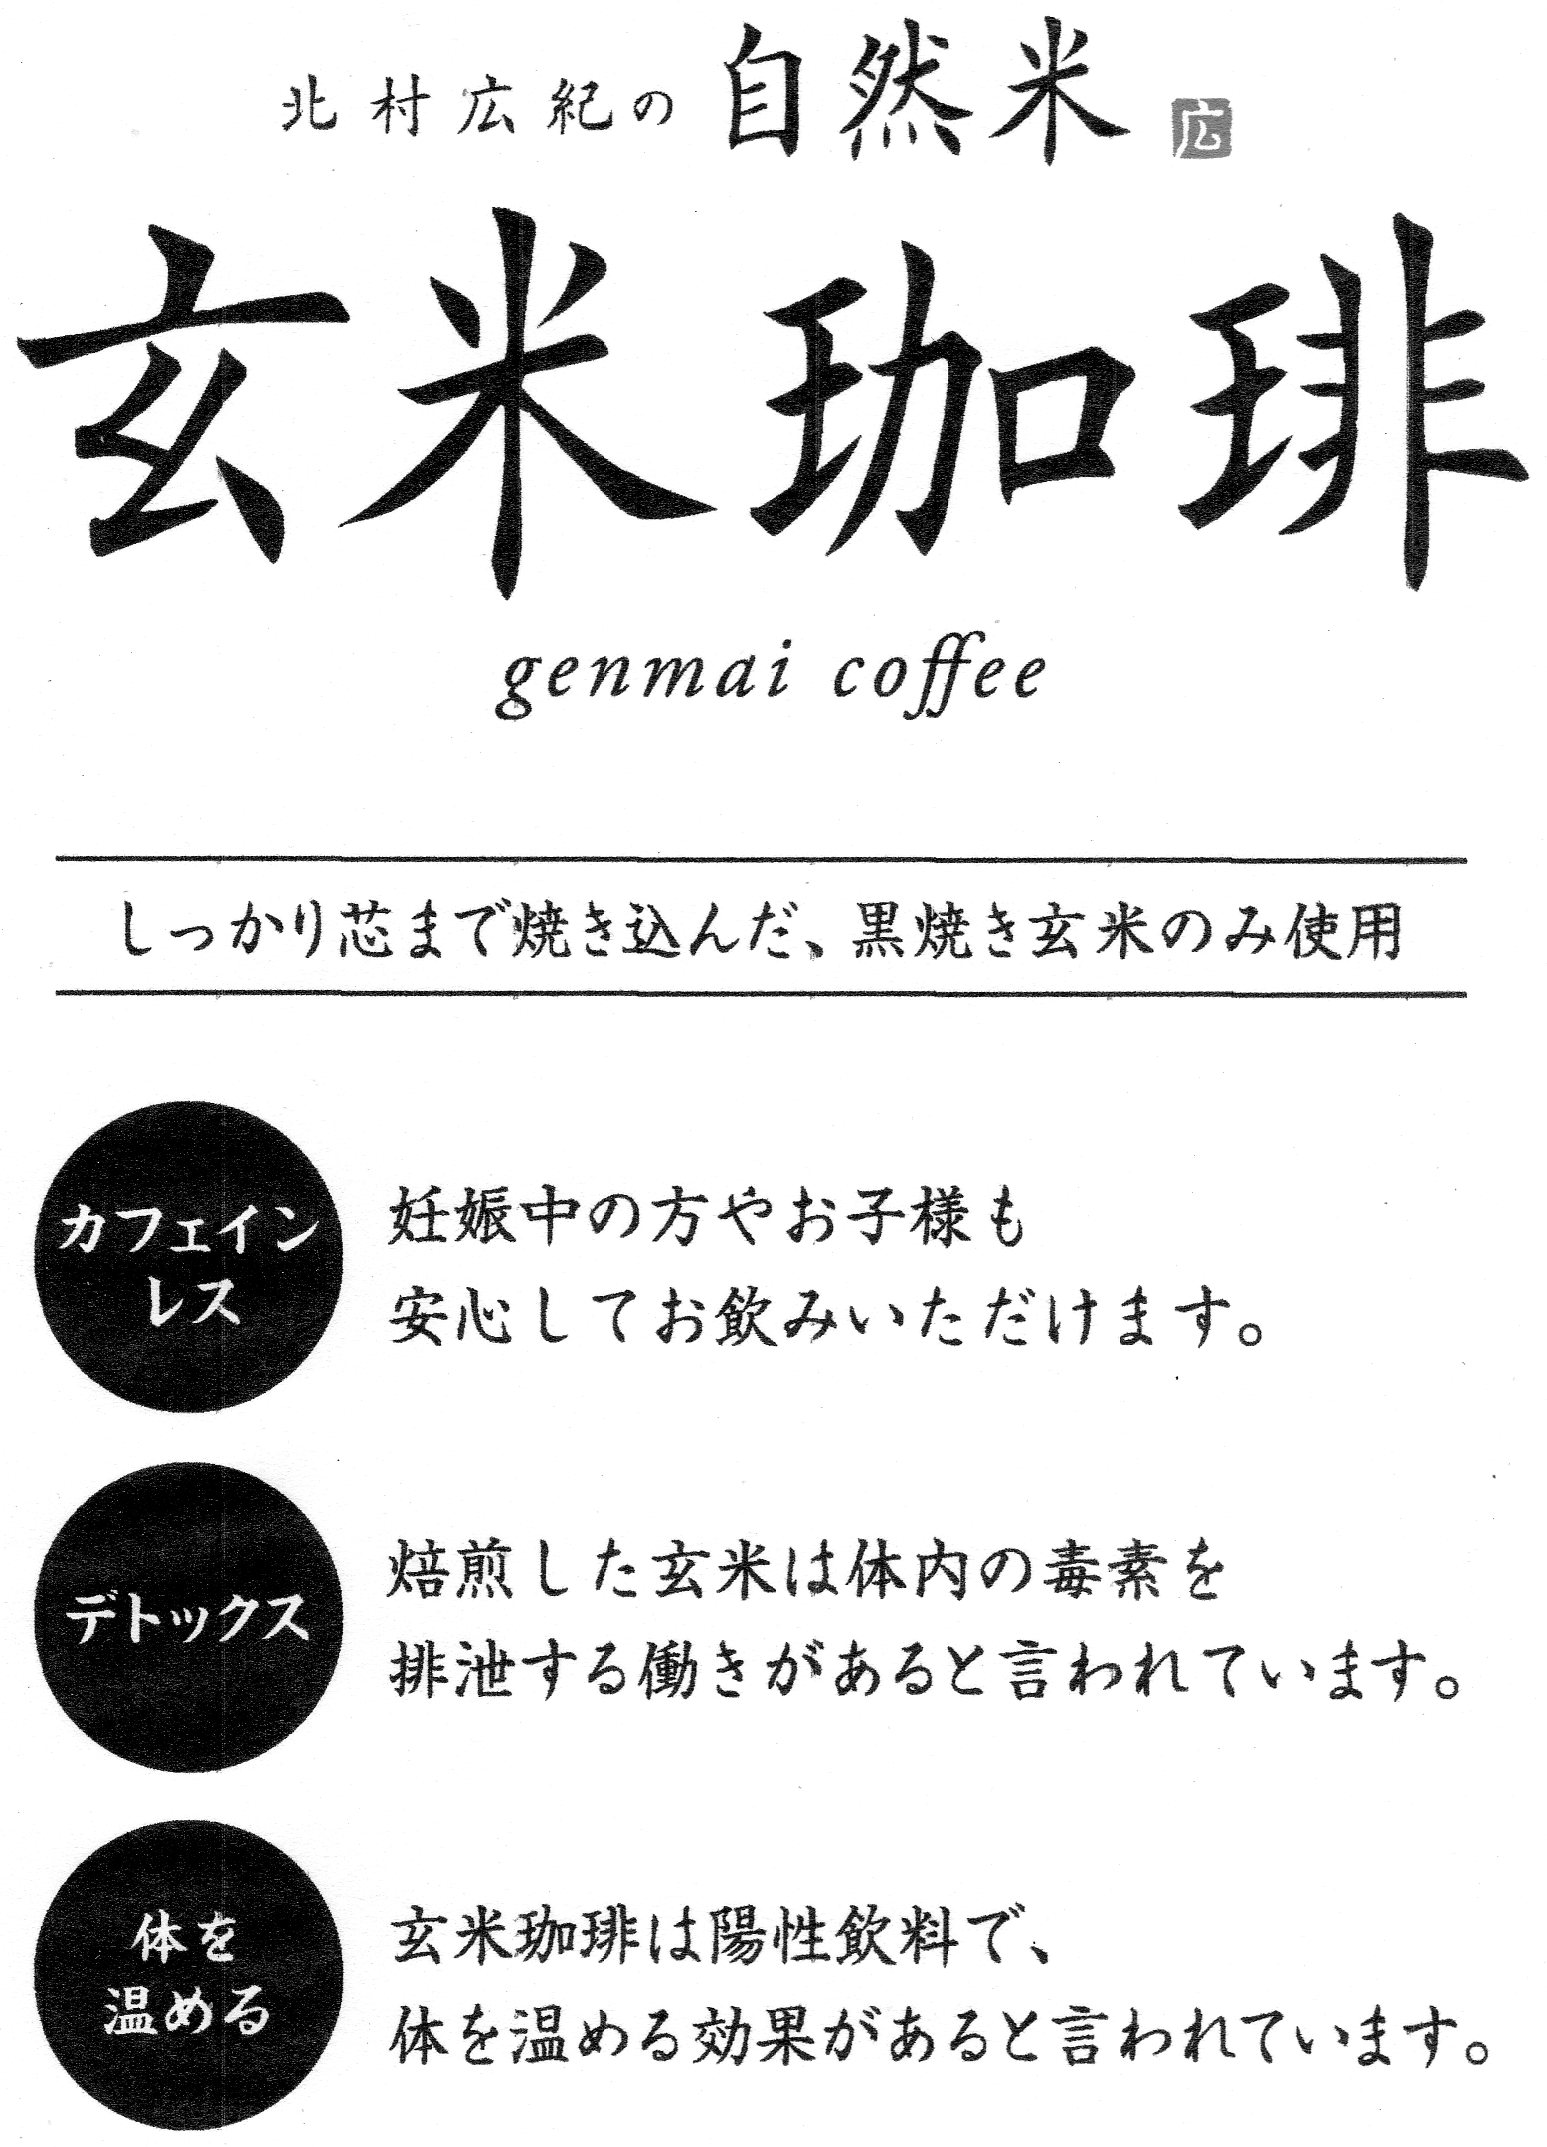 玄米コーヒー2